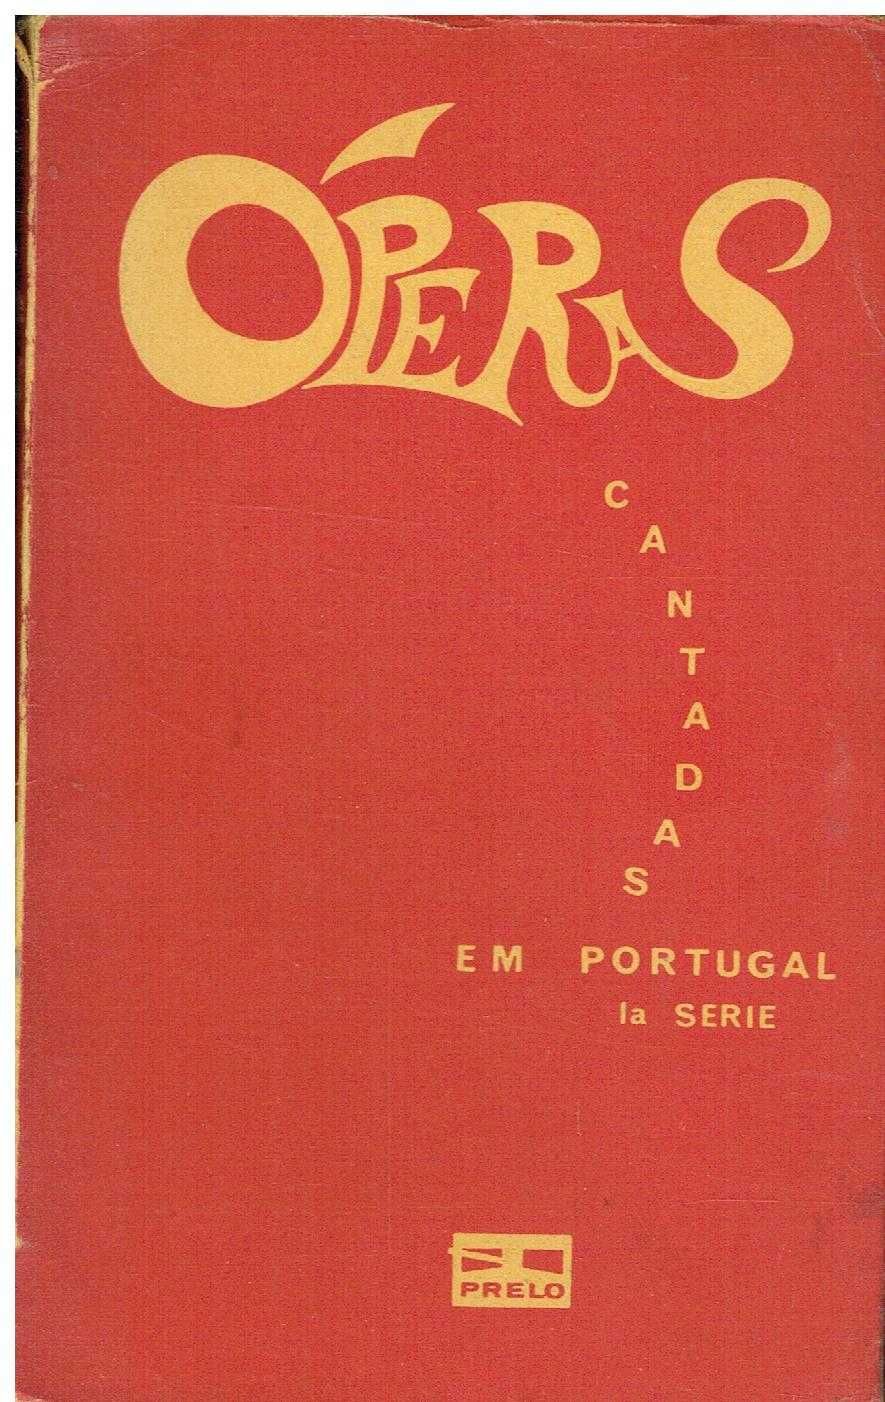 13057

Operas cantadas em Portugal
Texto Mario Bravo